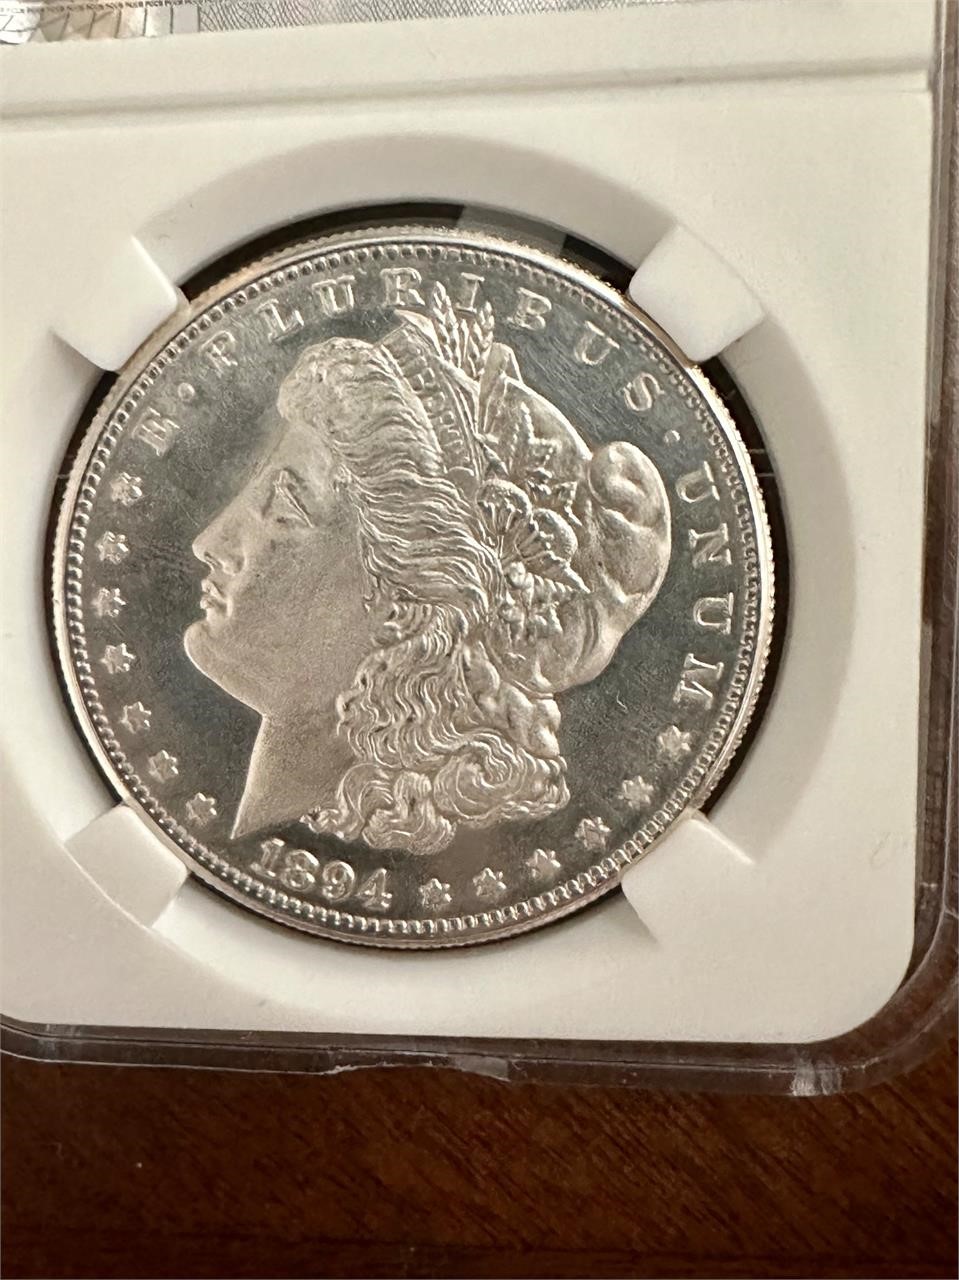 North Texas - Rare Morgan Silver Dollar Auction